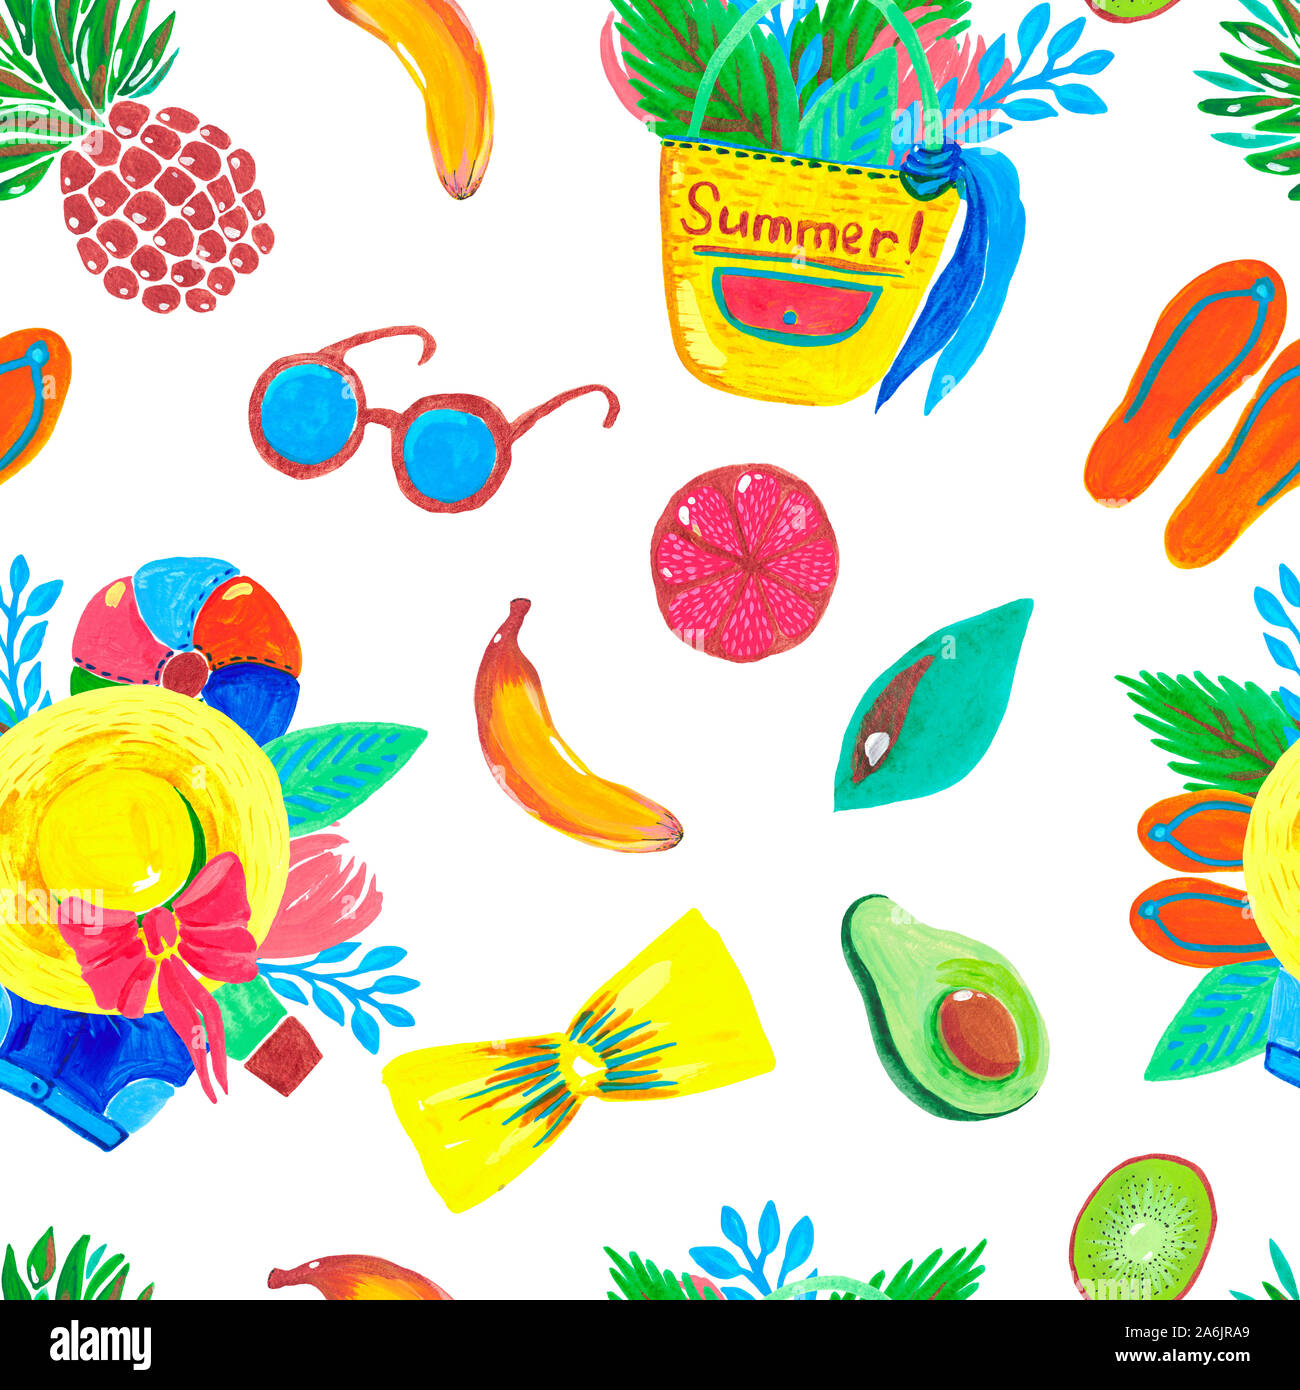 Modello senza giunture donne estate accessori per il viaggio e la spiaggia tropicale frutto di avocado su sfondo bianco. Illustrazione ad acquerello Foto Stock